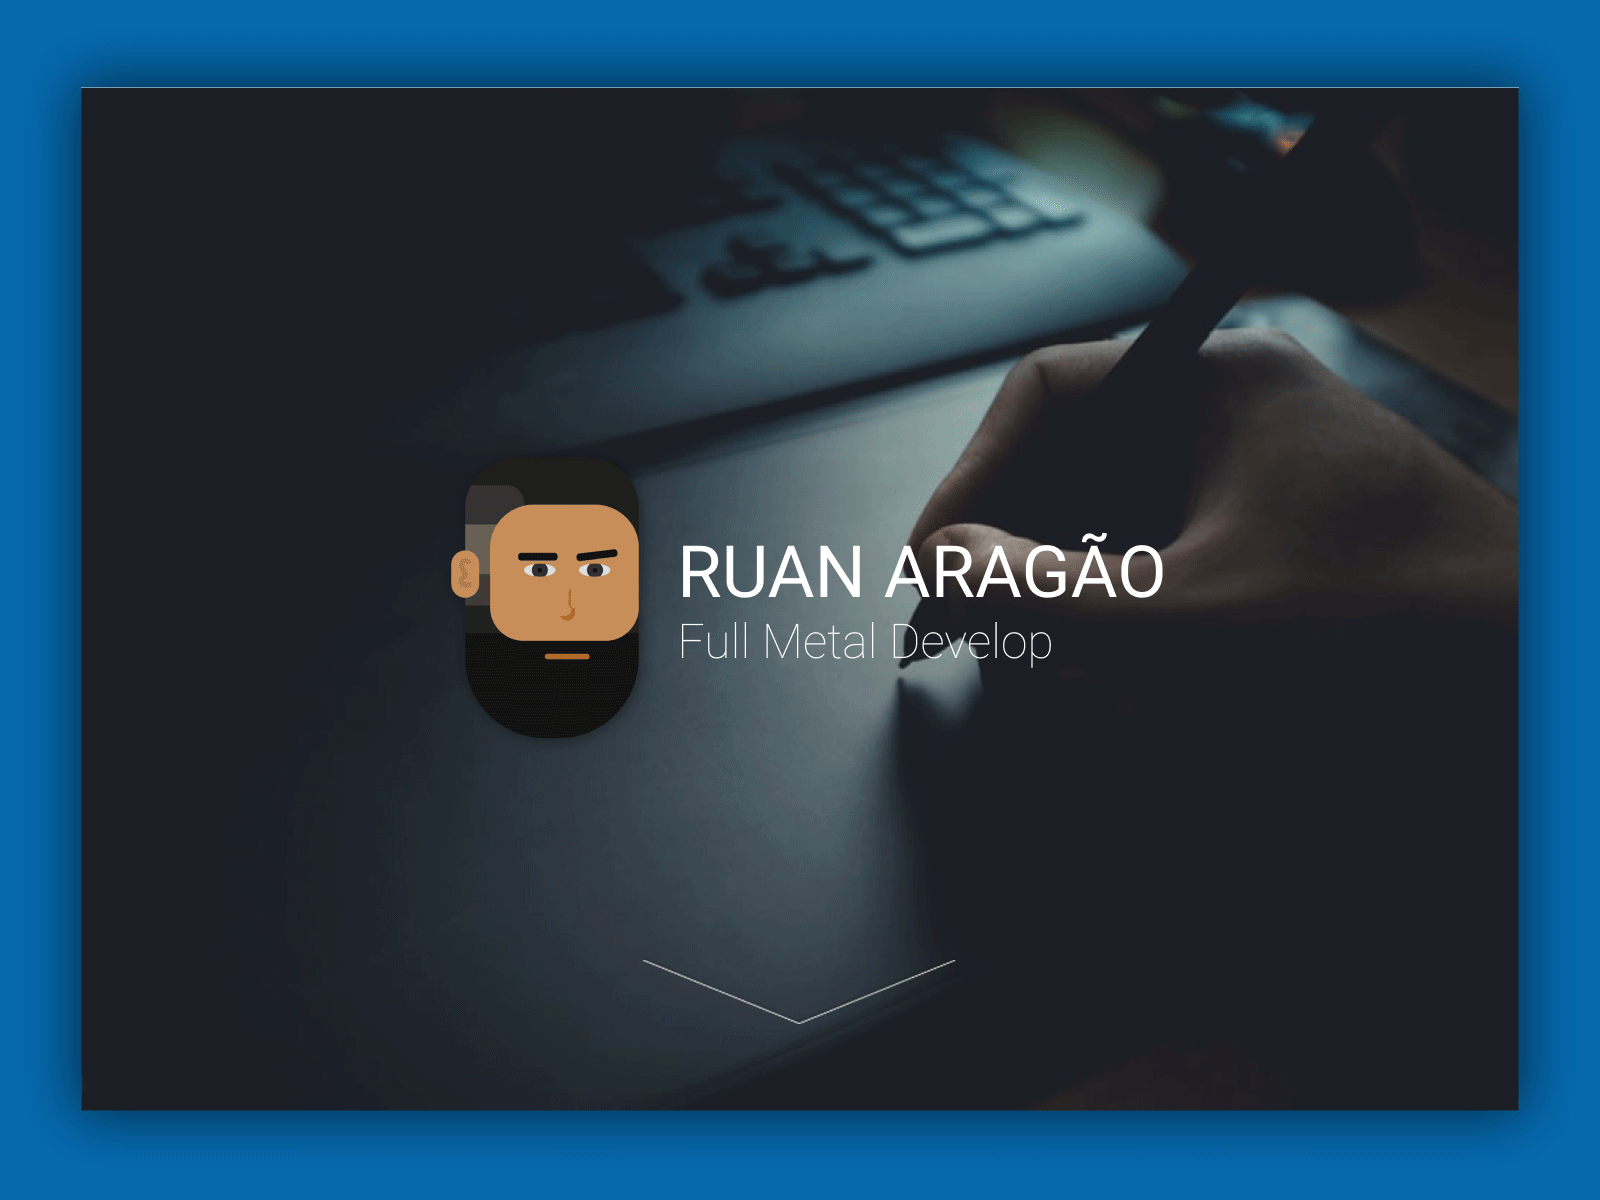 Ruan Aragon's new website